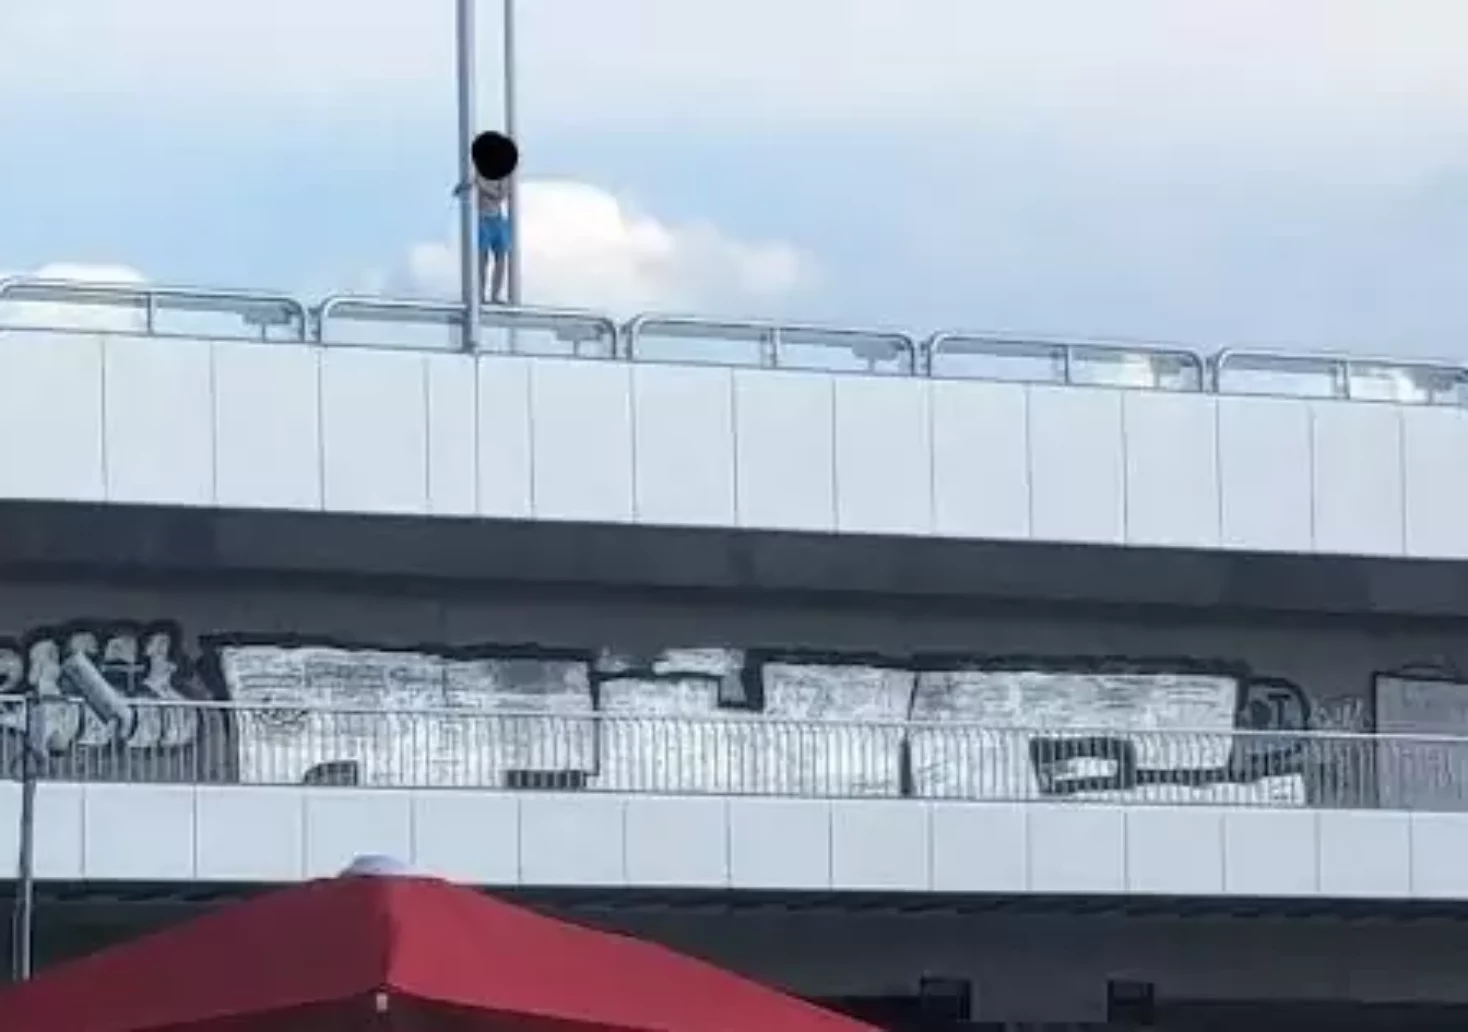 Foto in Beitrag von 5min.at: Zu sehen ist eine Person auf einer Brücke in Wien.